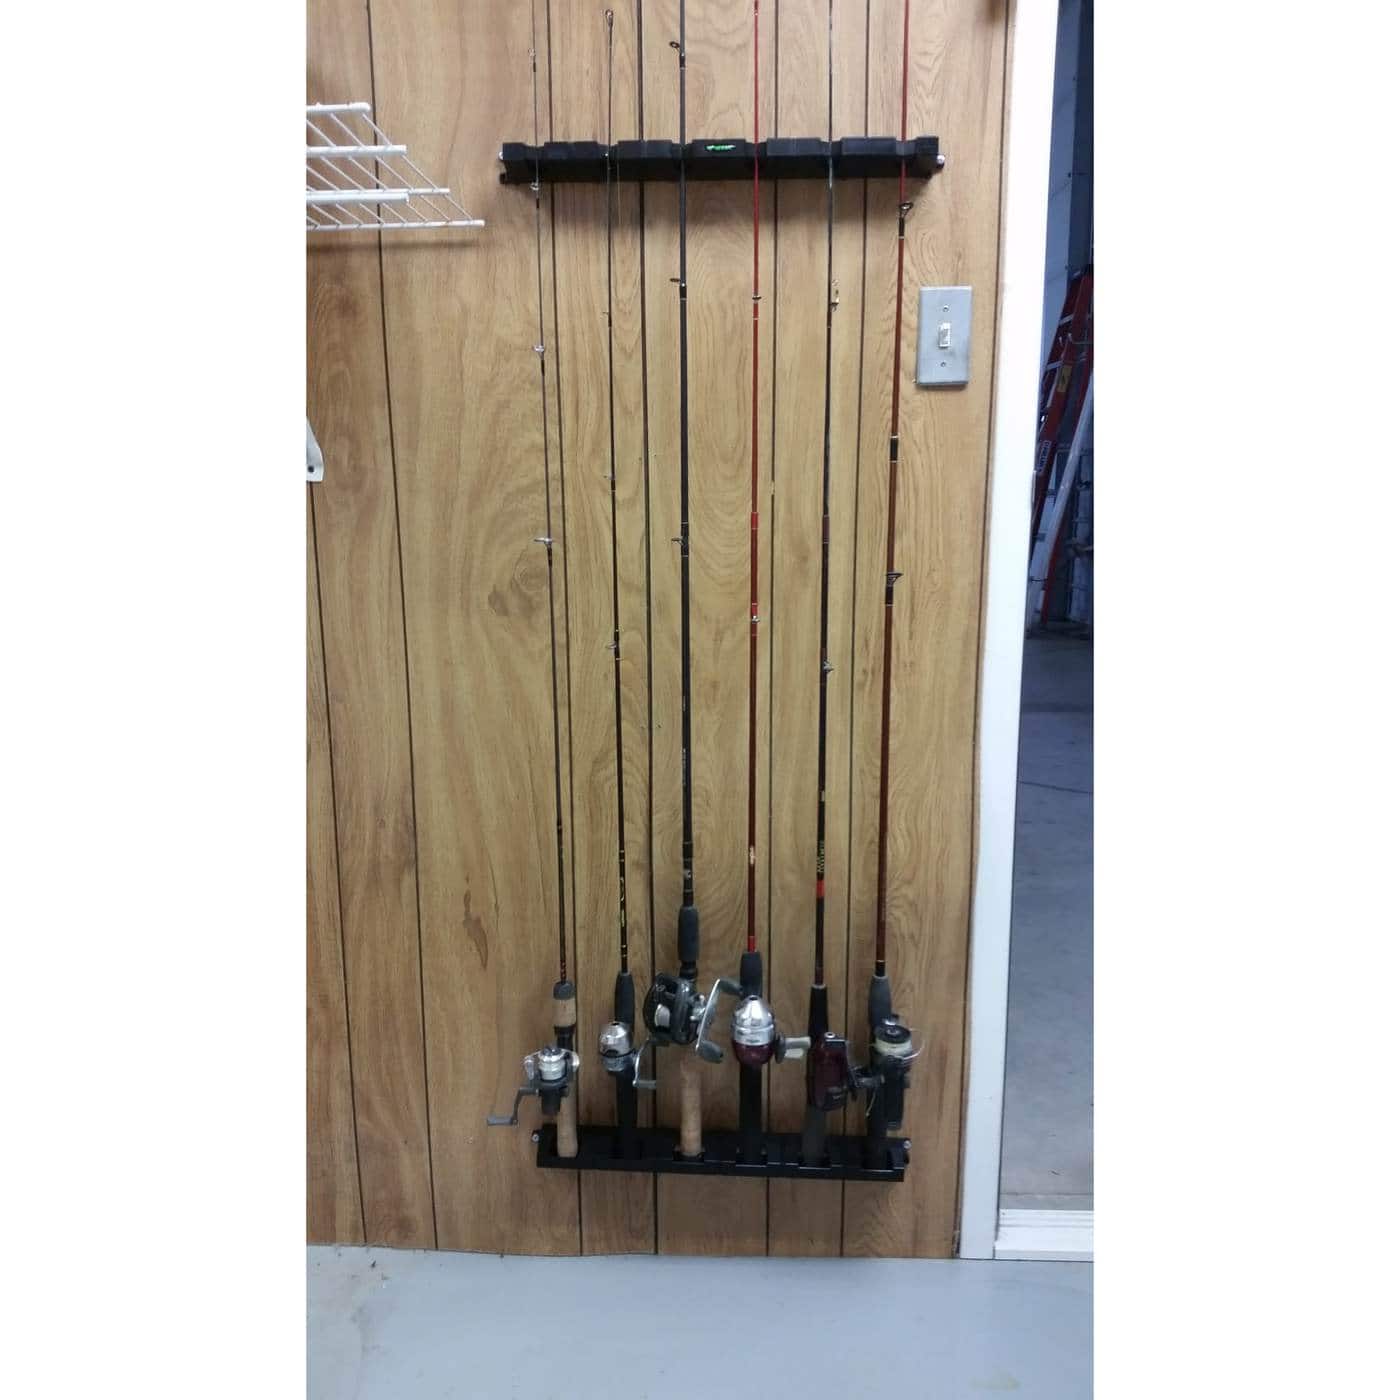 Super 6 Fishing Rod Rack